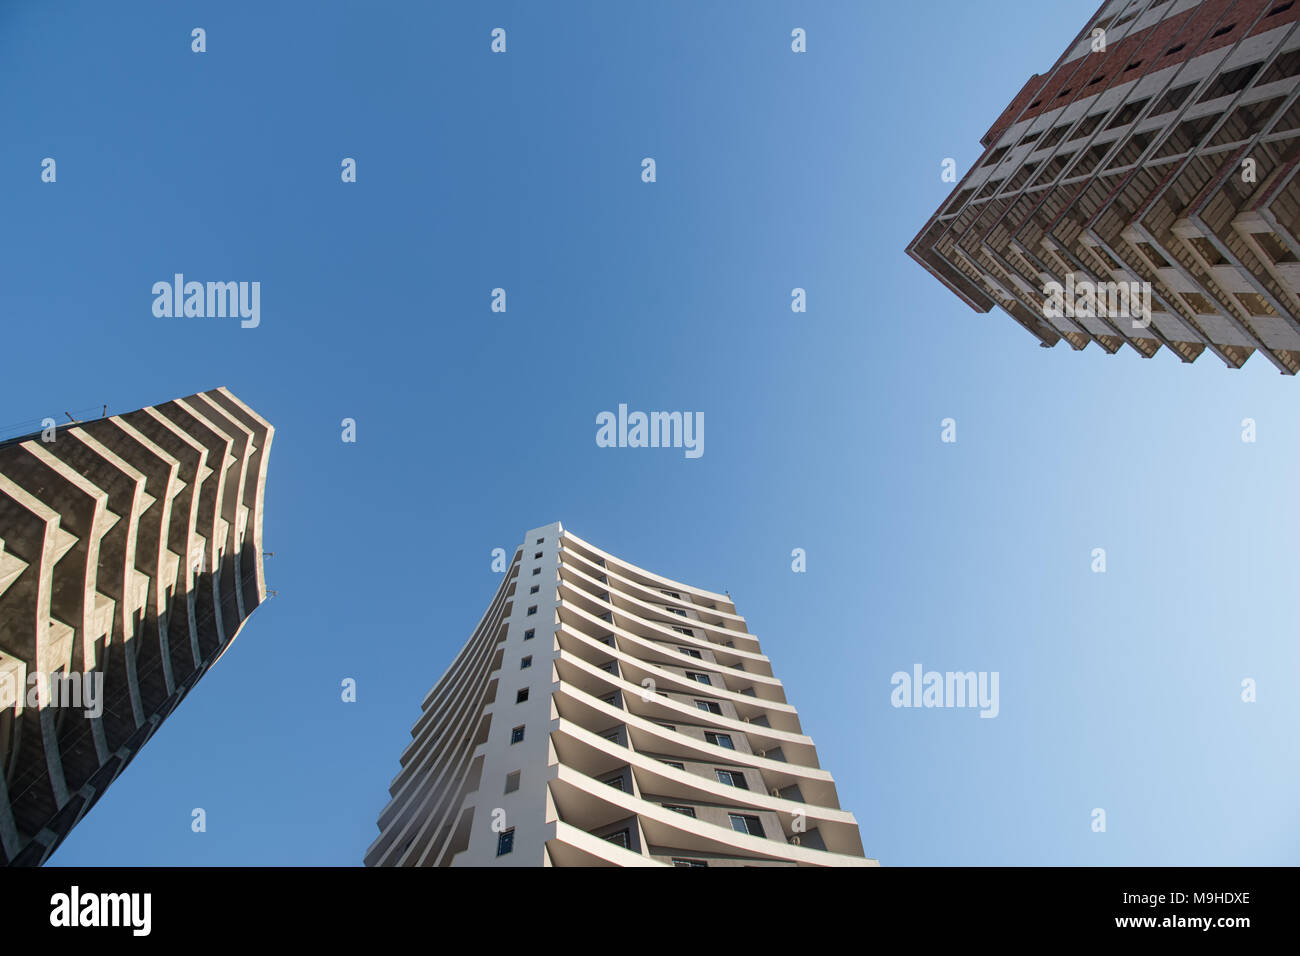 Moderno appartamento immobili in una giornata di sole con un cielo blu. Facciata di un moderno edificio di appartamenti. Foto Stock